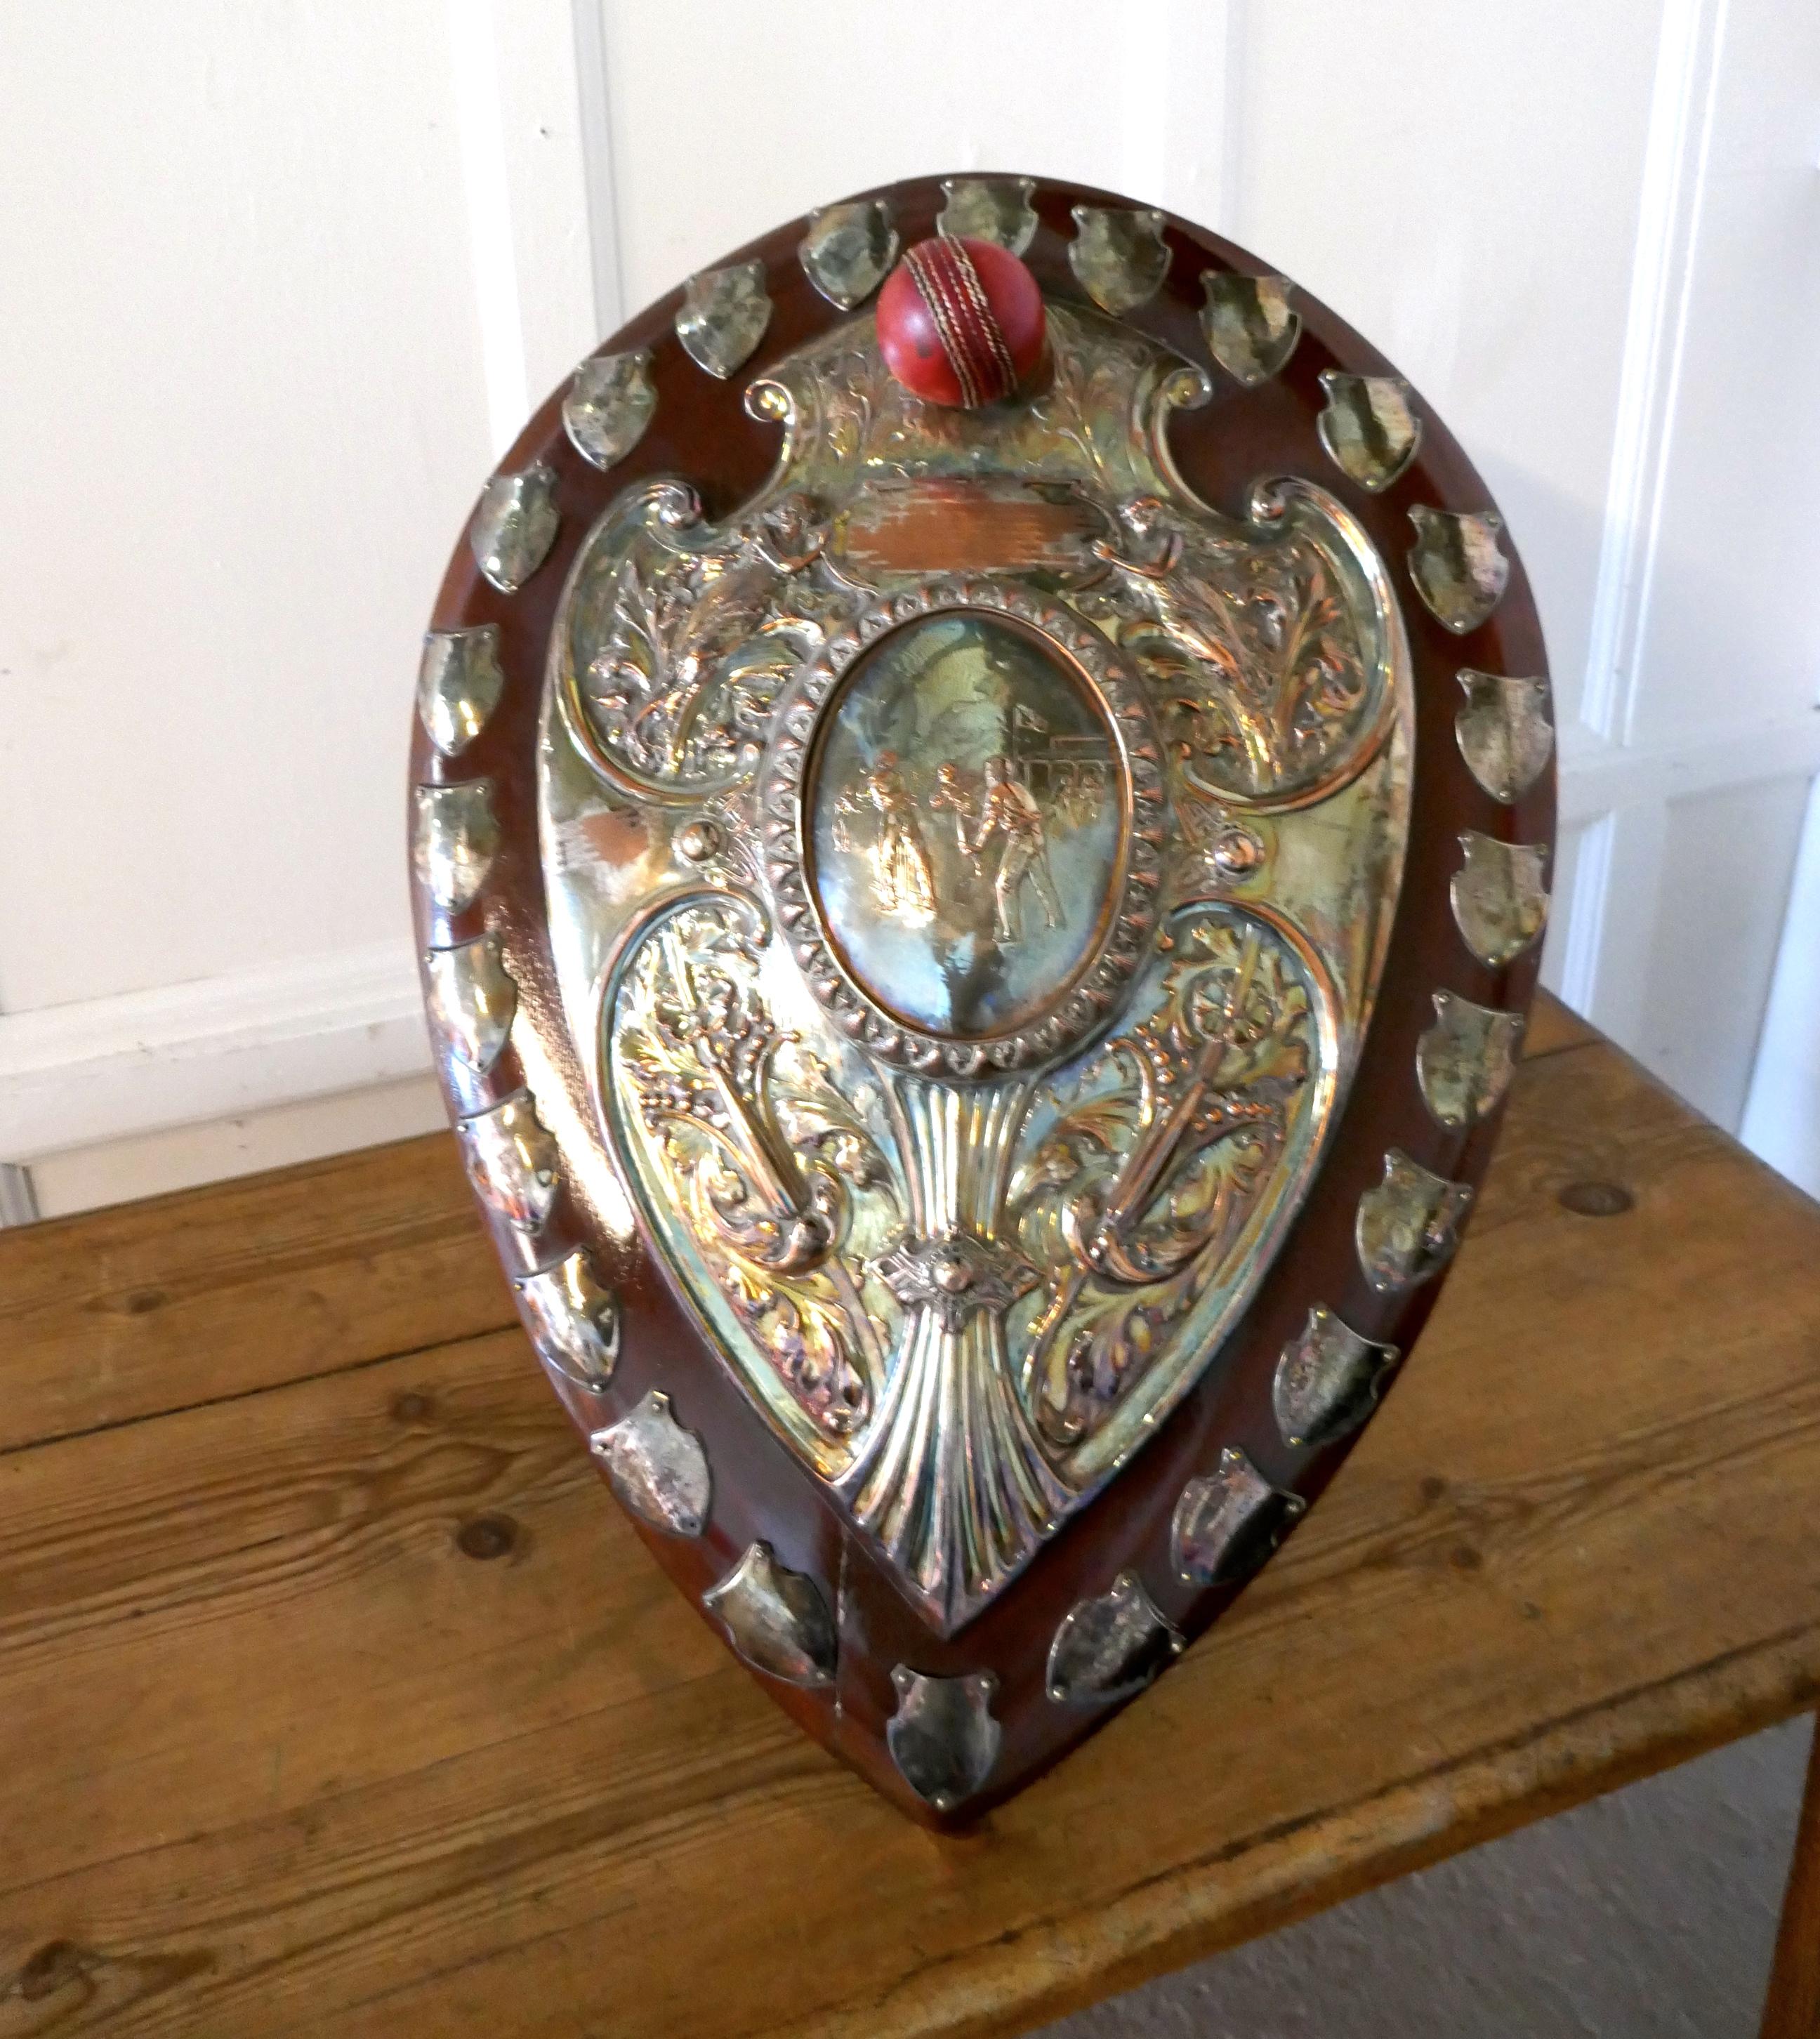 1901 Jugendstil Sheffield Plate Cricket Trophy Shield, von Walker Hall und Söhne

Dies ist ein fantastisches Stück, ein Kunstwerk, das Eichenschild hat eine geprägte Sheffield Silber Platte, in der Mitte dieses eine Szene aus einem Cricket-Match und